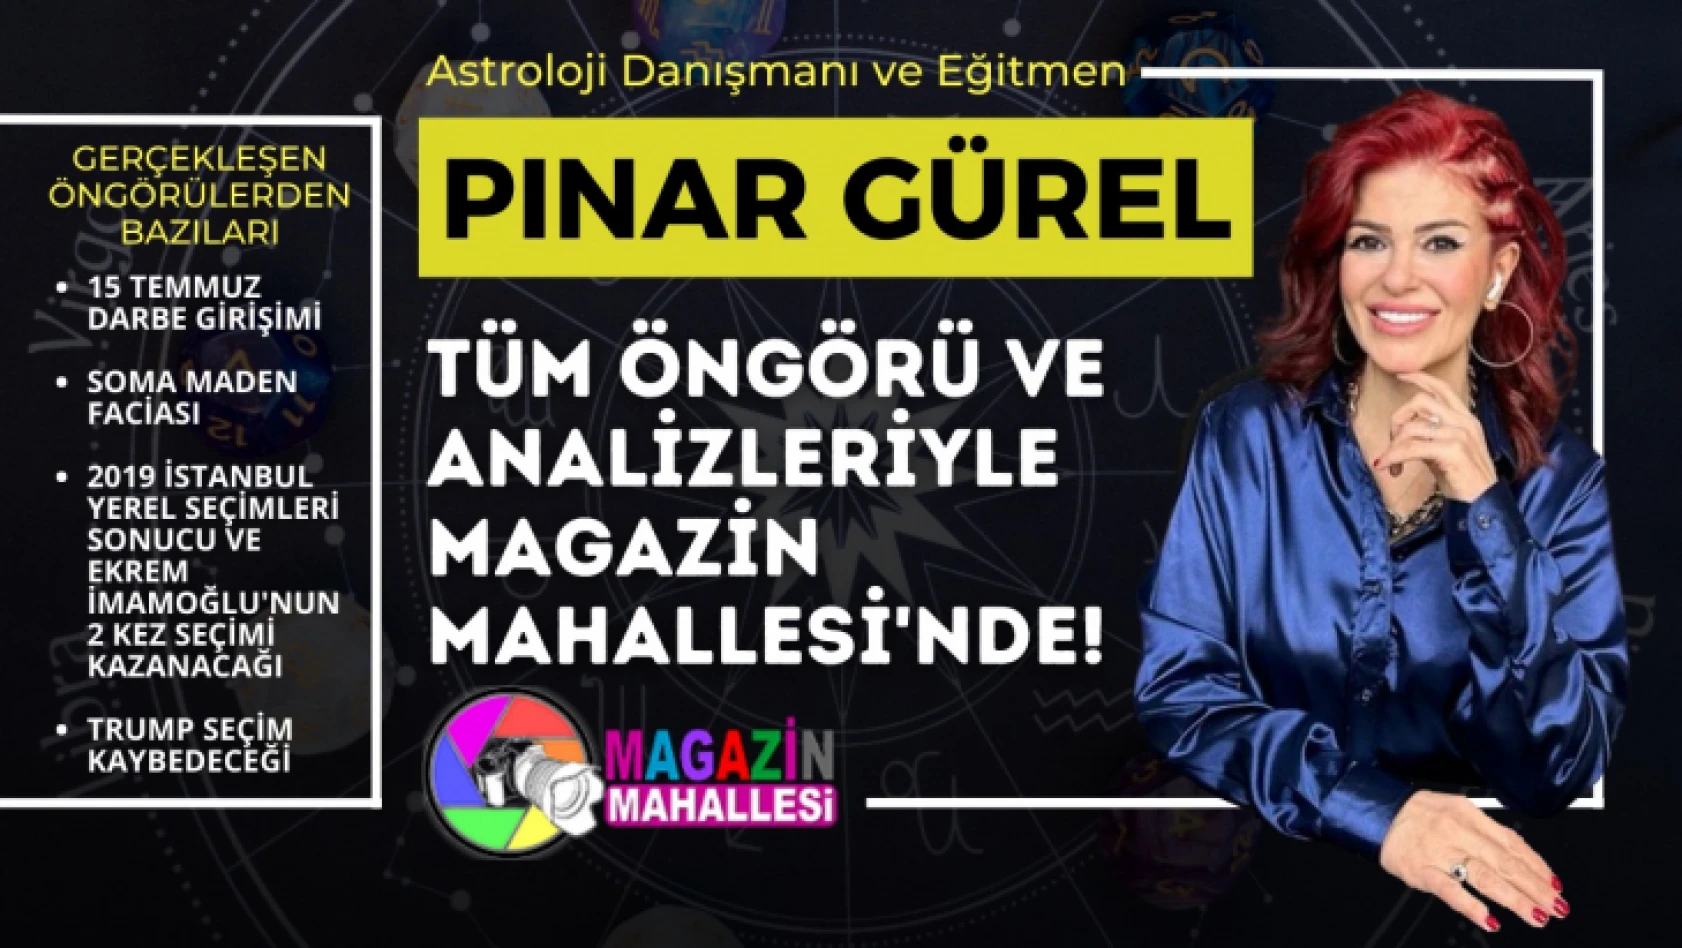 Astrolog Pınar Gürel, Magazin Mahallesi yazar kadrosuna dahil oldu